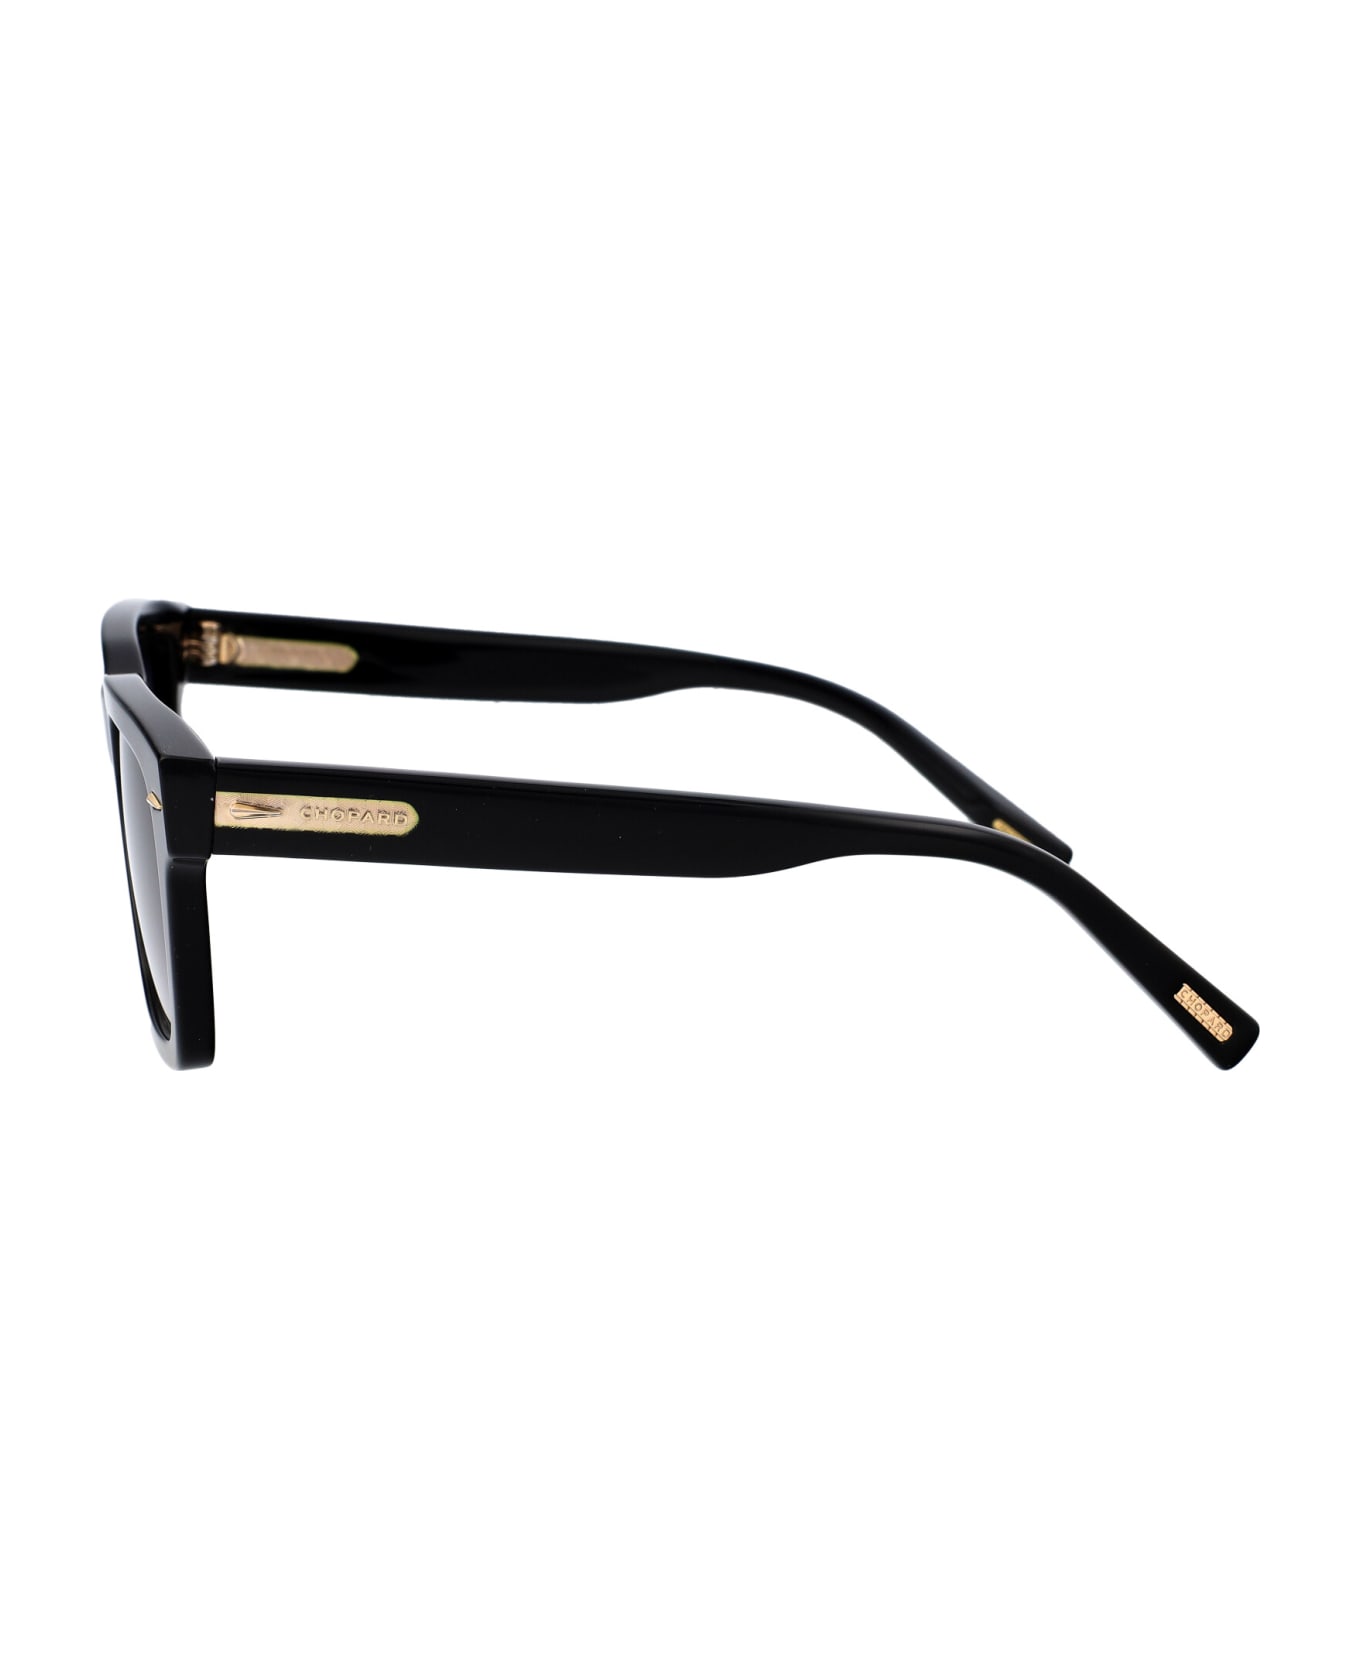 Chopard Sch337 Sunglasses - 700Z BLACK